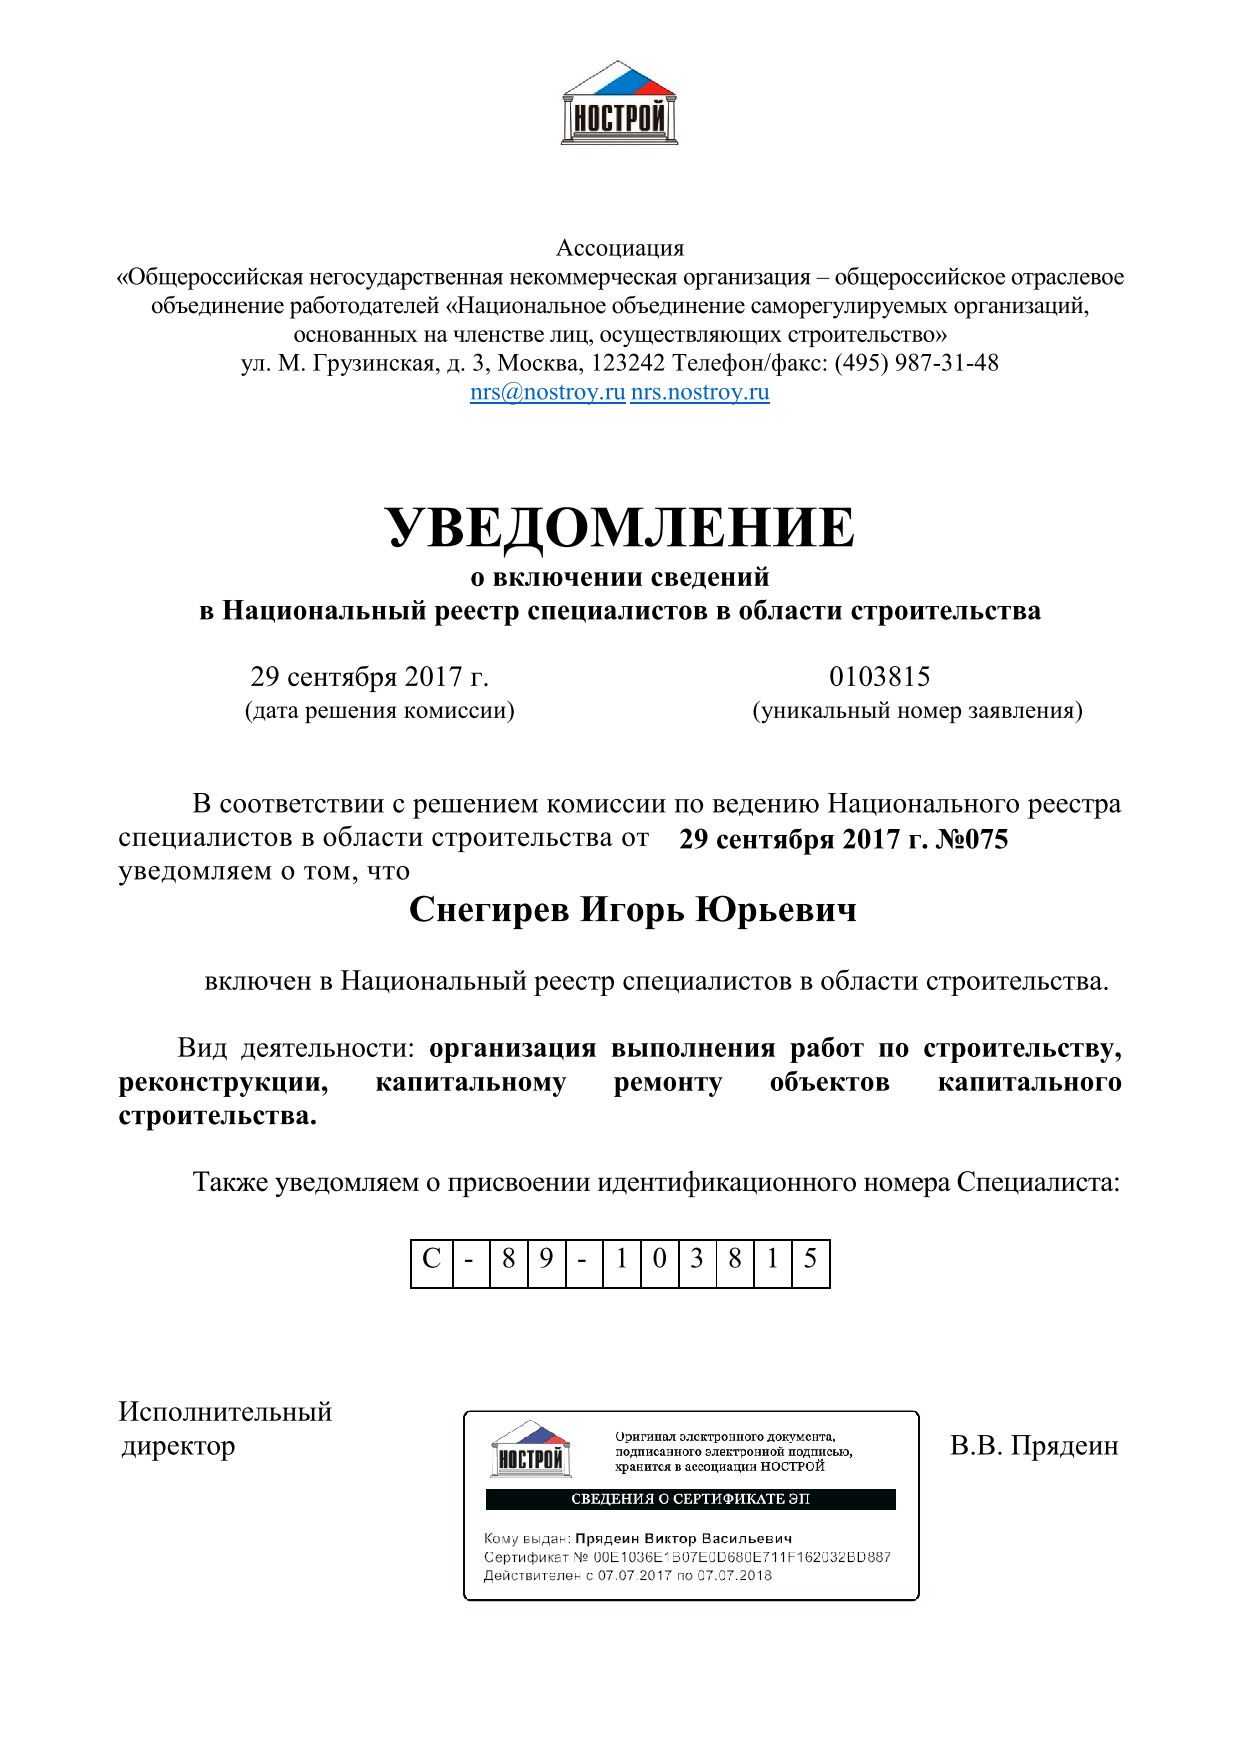 Уведомление о включении сведений в Национальный реестр специалистов в области строительства Снегирёва Игоря Юрьевича